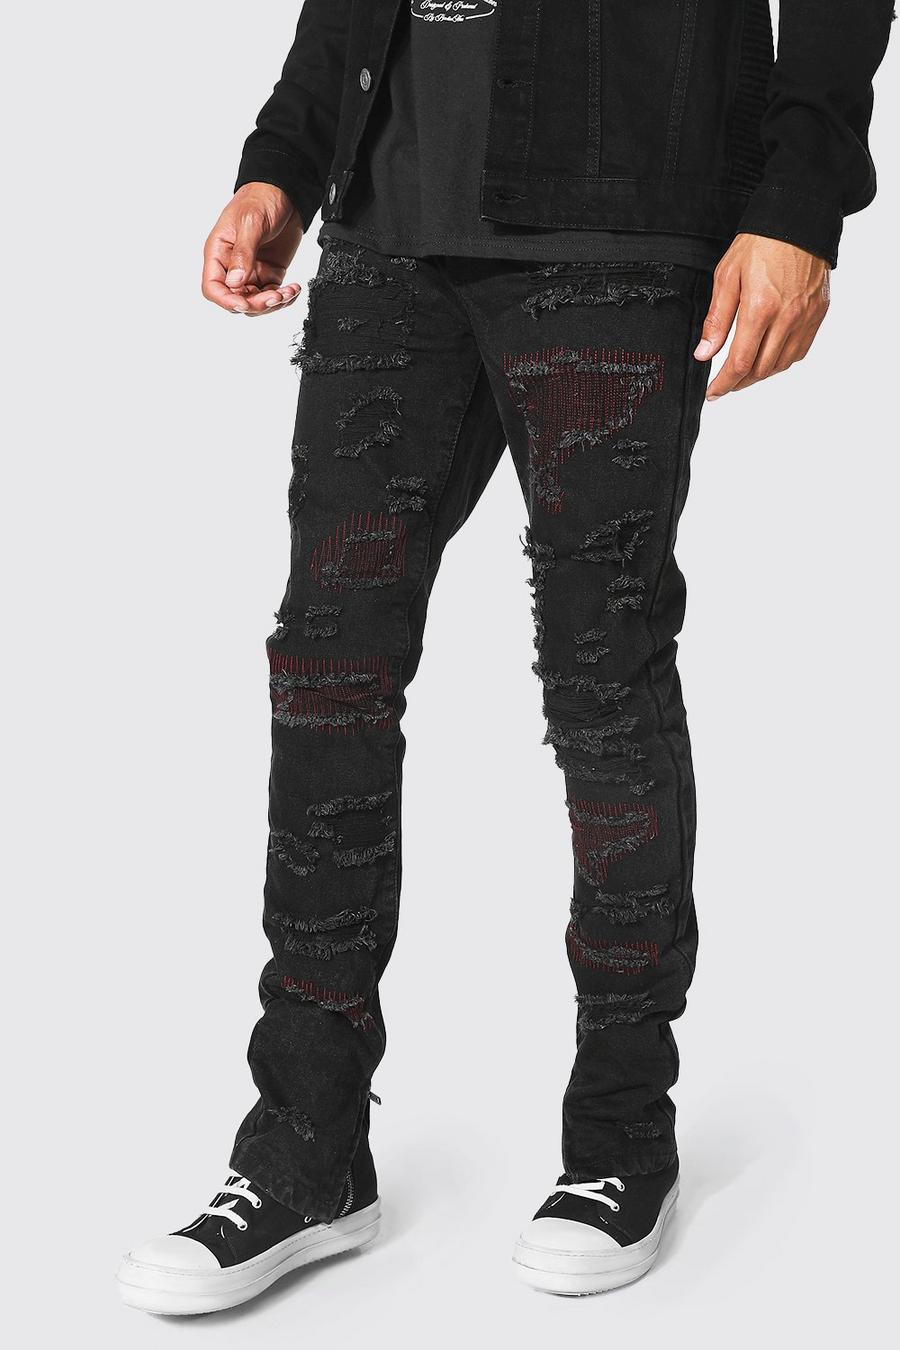 שחור סקיני ג'ינס מבד קשיח עם קרעים והדפס חוזר, לגברים גבוהים image number 1